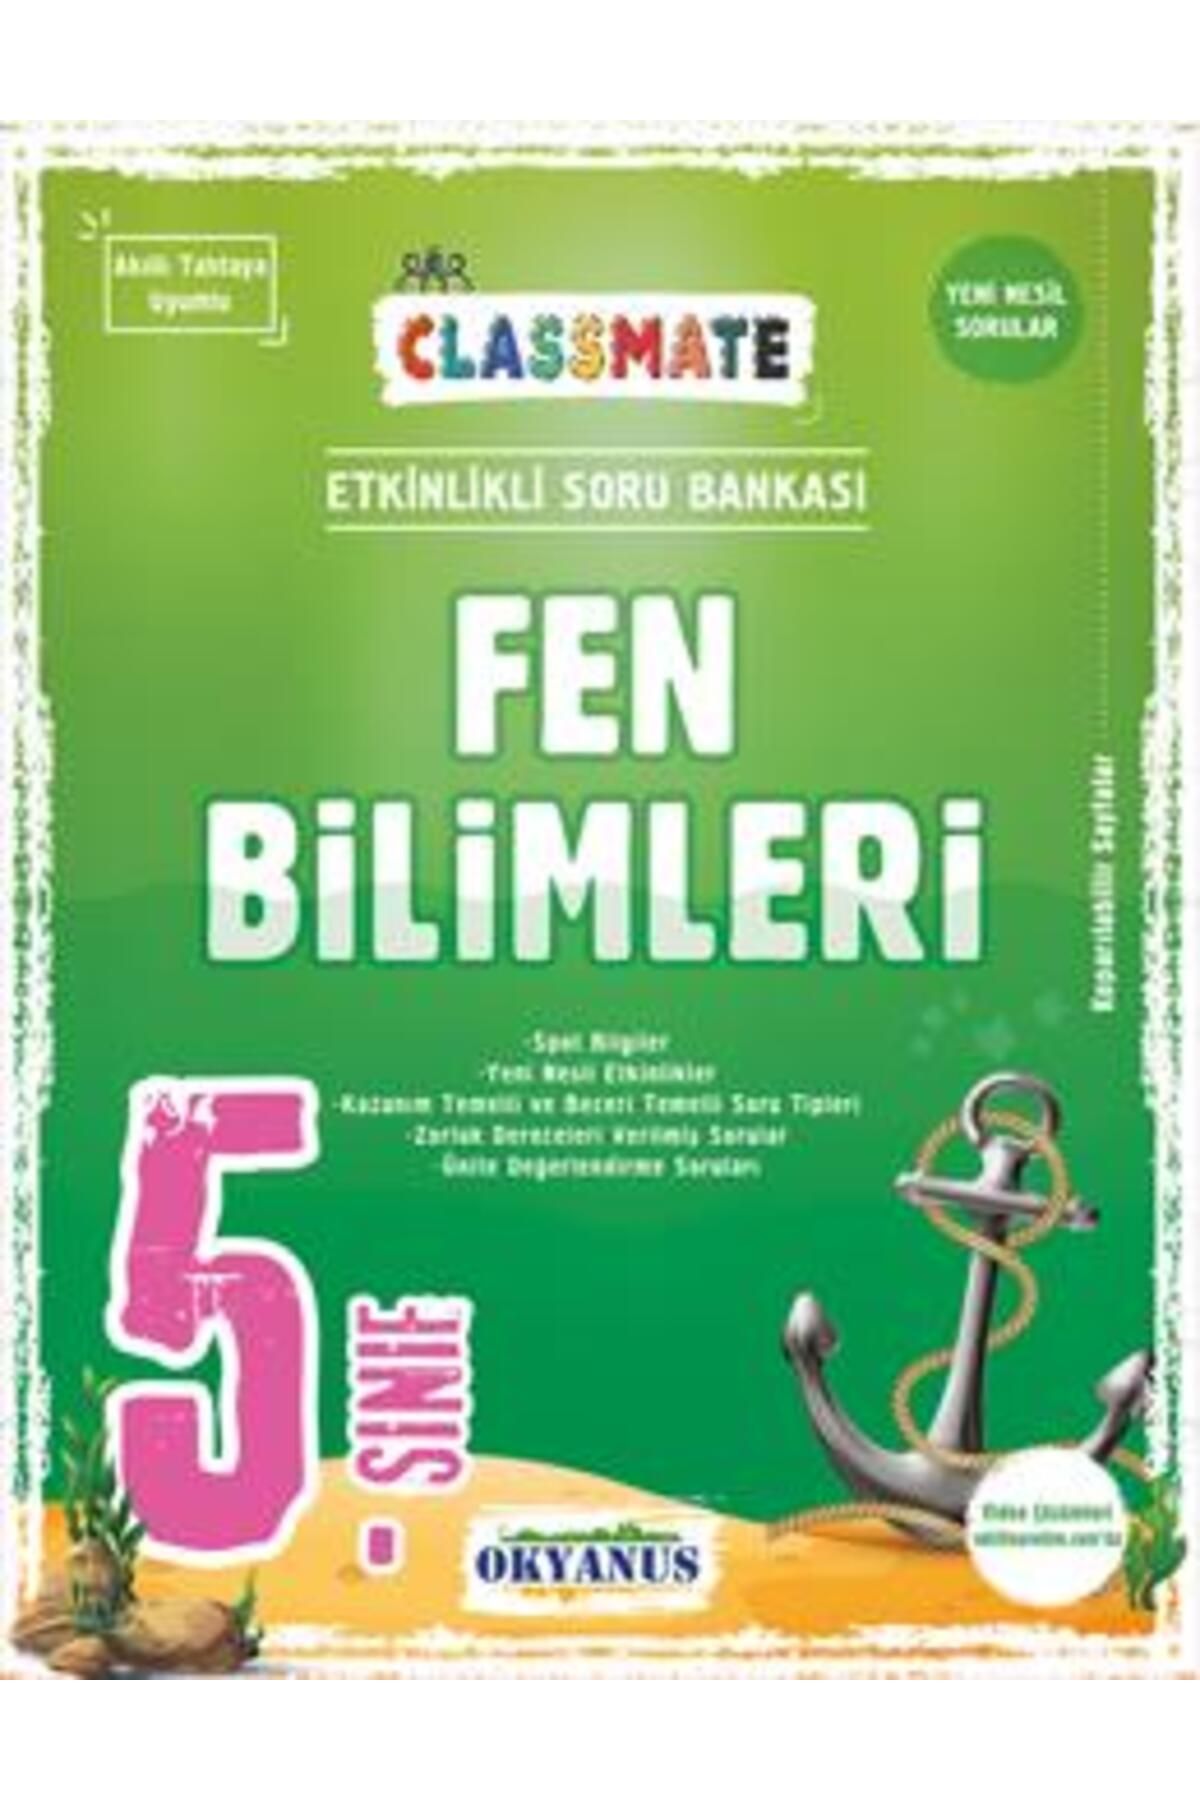 Olimpos Yayınları Okyanus Yayınları 5. Sınıf Fen Bilimleri Classmate Soru Bankası